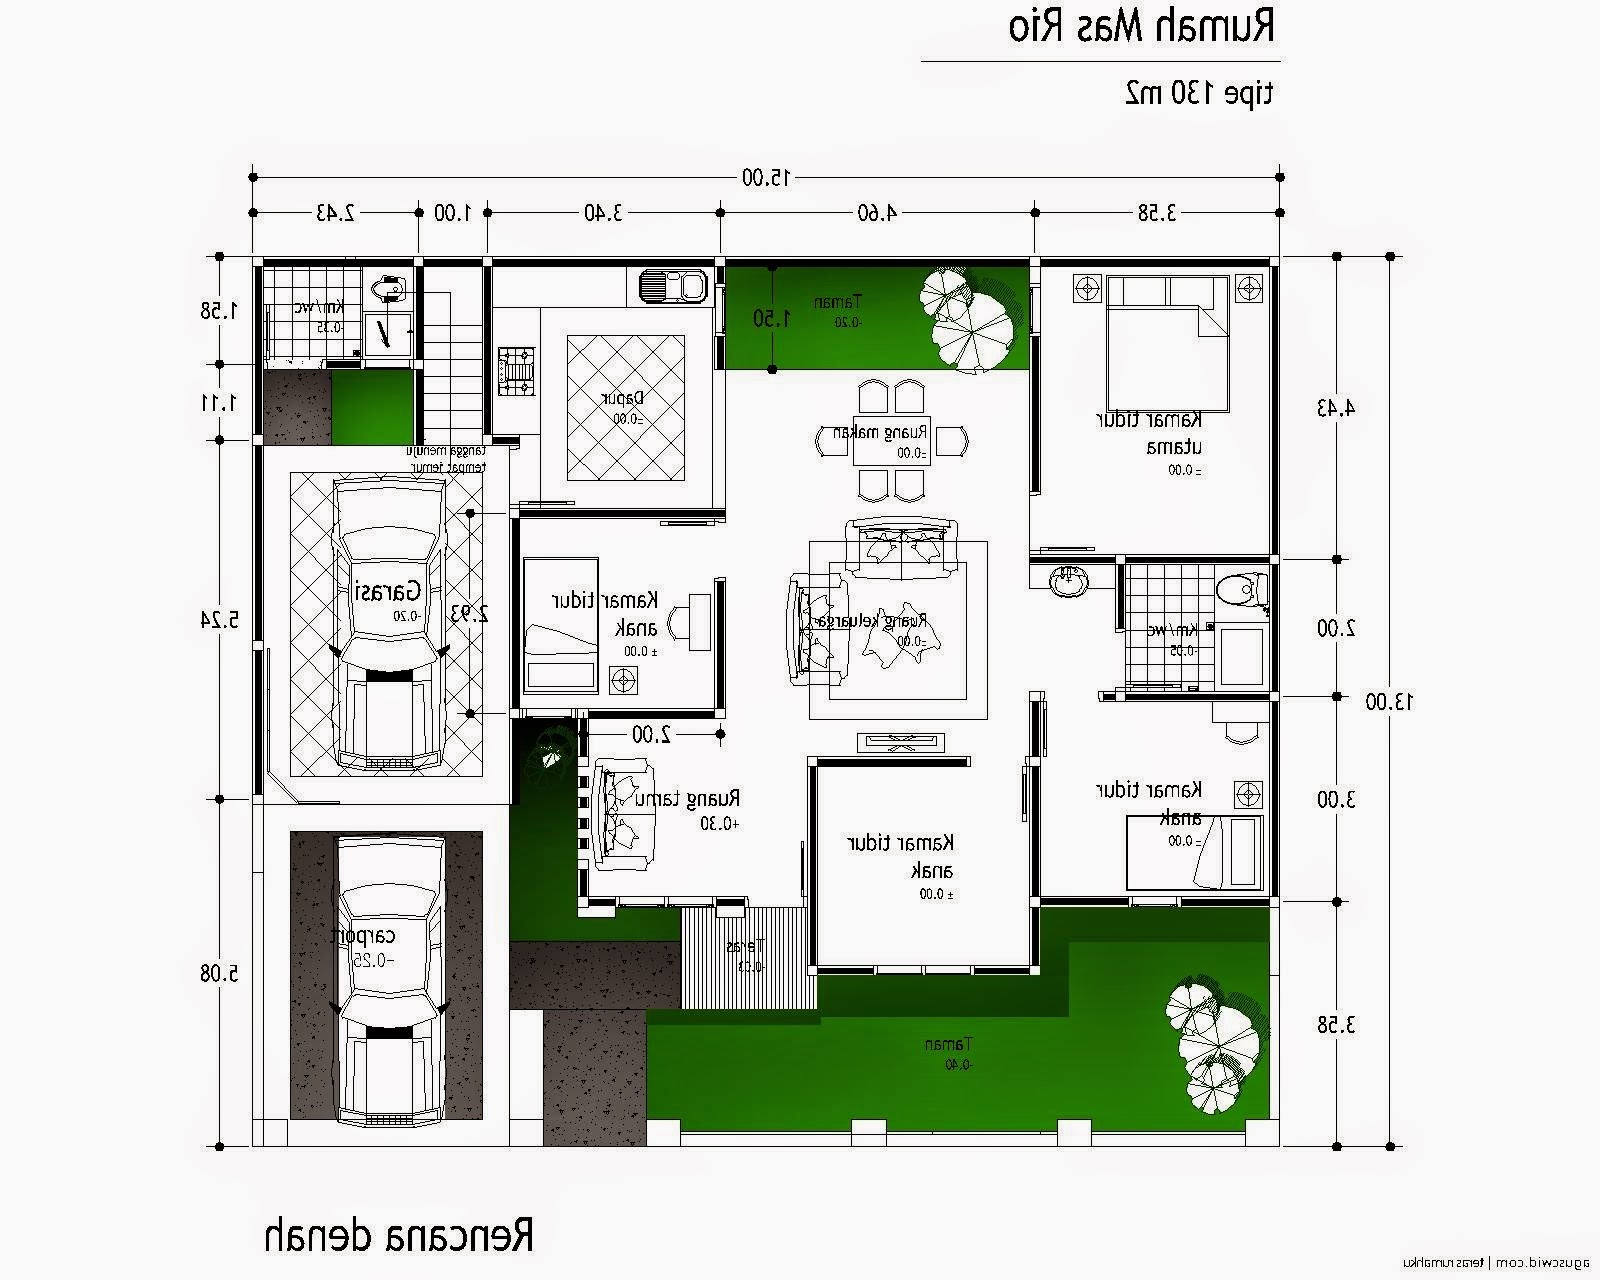 Desain Rumah Minimalis 1,5 Lantai - Gambar Foto Desain Rumah